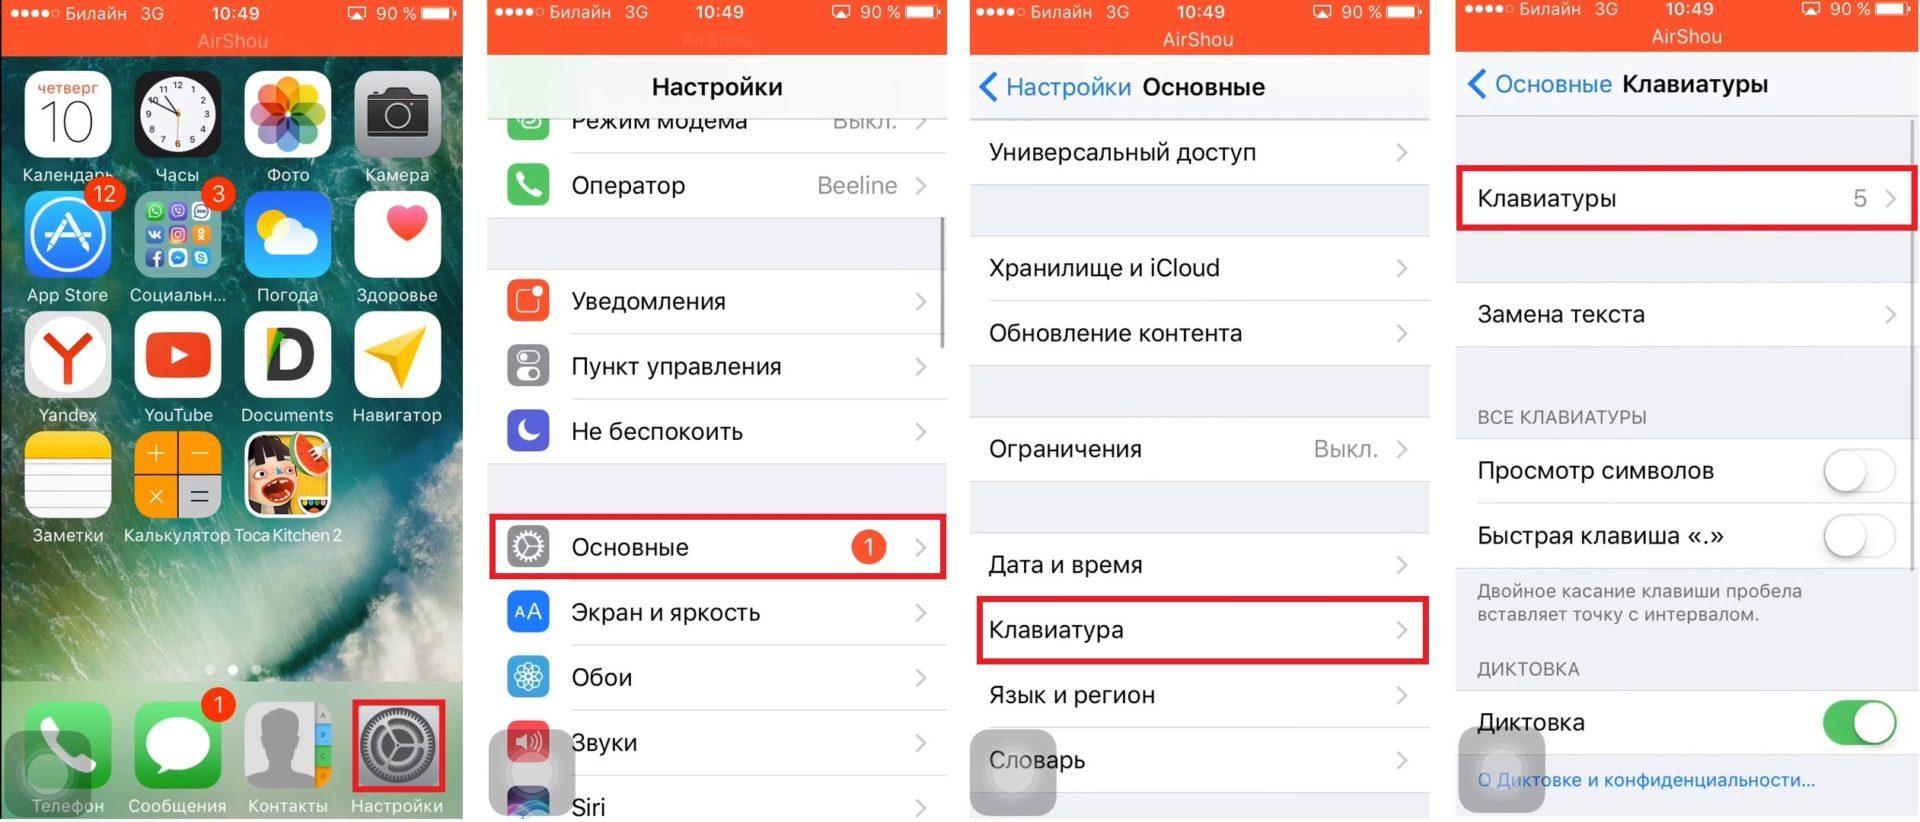 Как на айфоне перевести на русский язык телеграмм фото 70